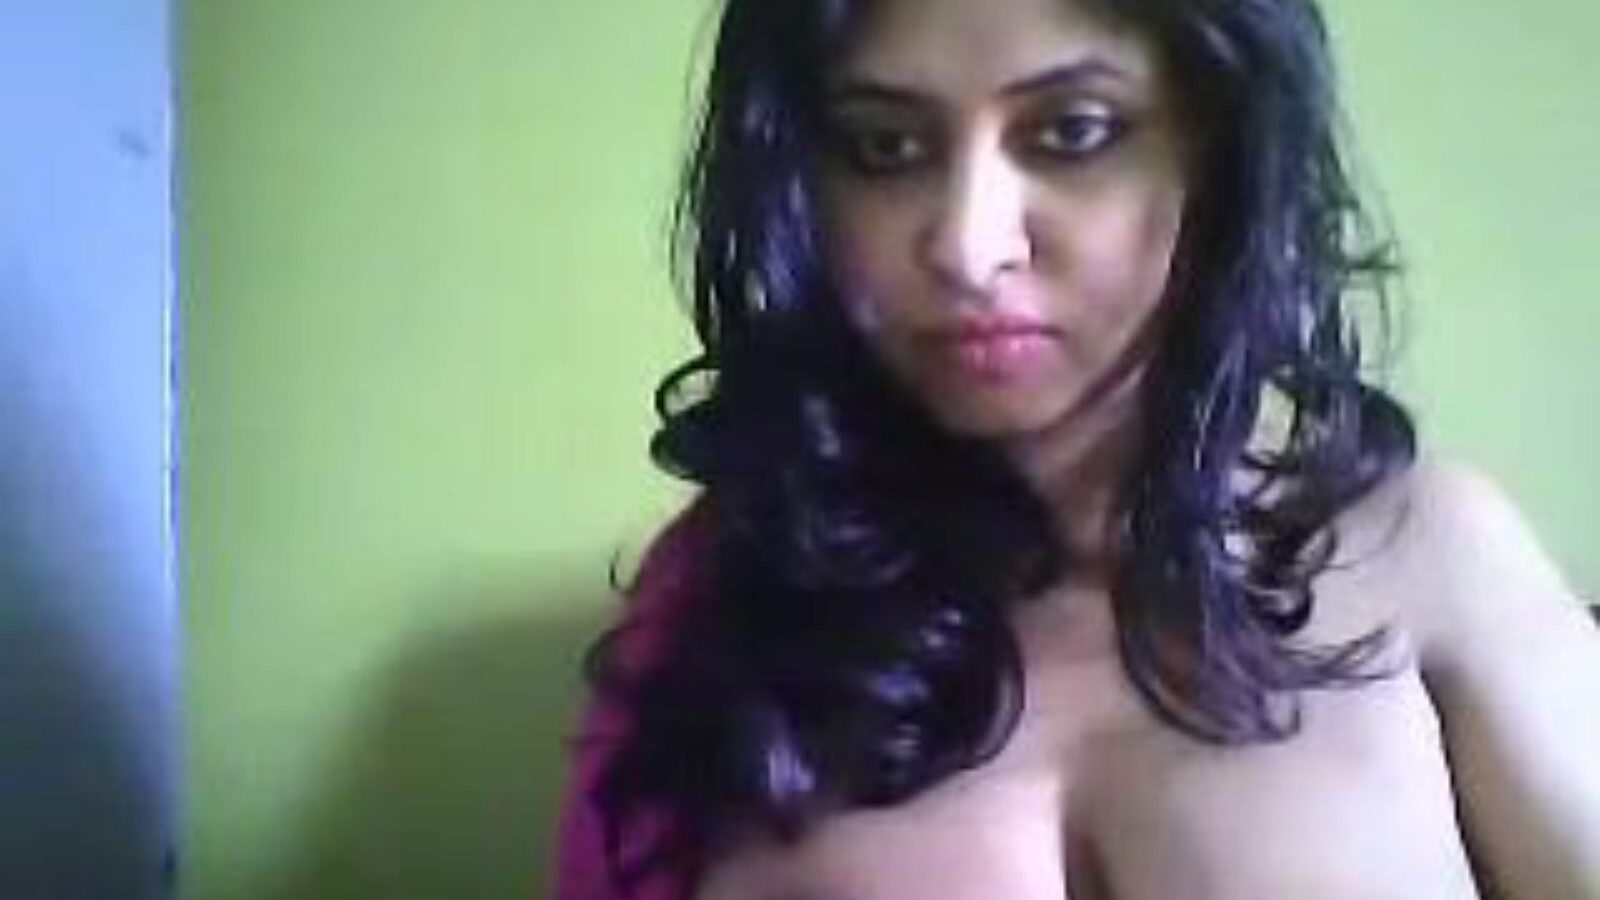 desi hot cam milf deepa, porno indien gratuit 27: xhamster regarder desi hot cam milf deepa scène de film sur xhamster, le site Web de tube géant avec des tonnes d'épisodes pornos indiens asiatiques gratuits pour tous et xxx hot porn